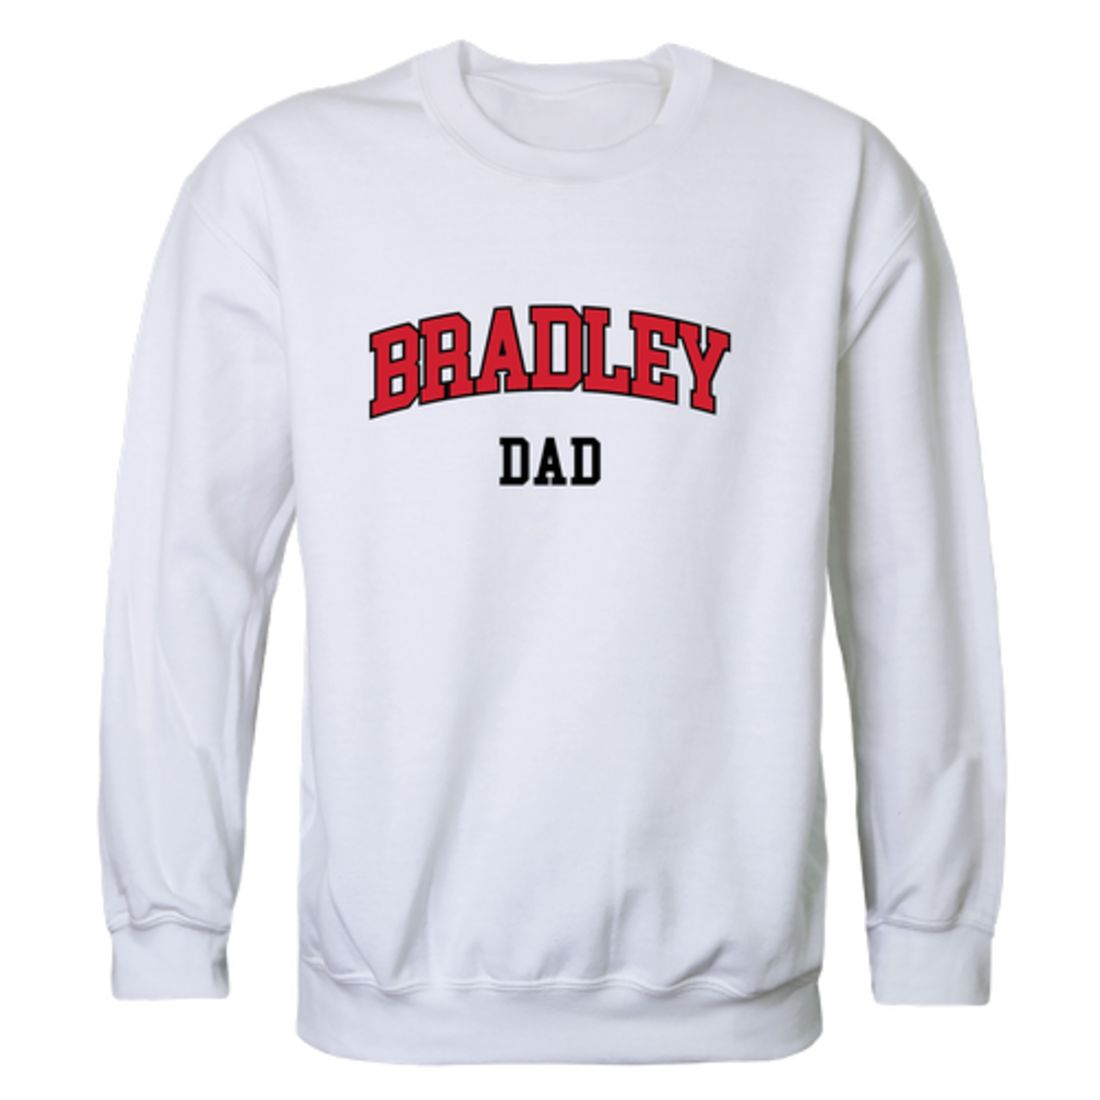 Bradley University Braves Dad Fleece Crewneck Pullover Sweatshirt Heather Grey-Campus-Wardrobe